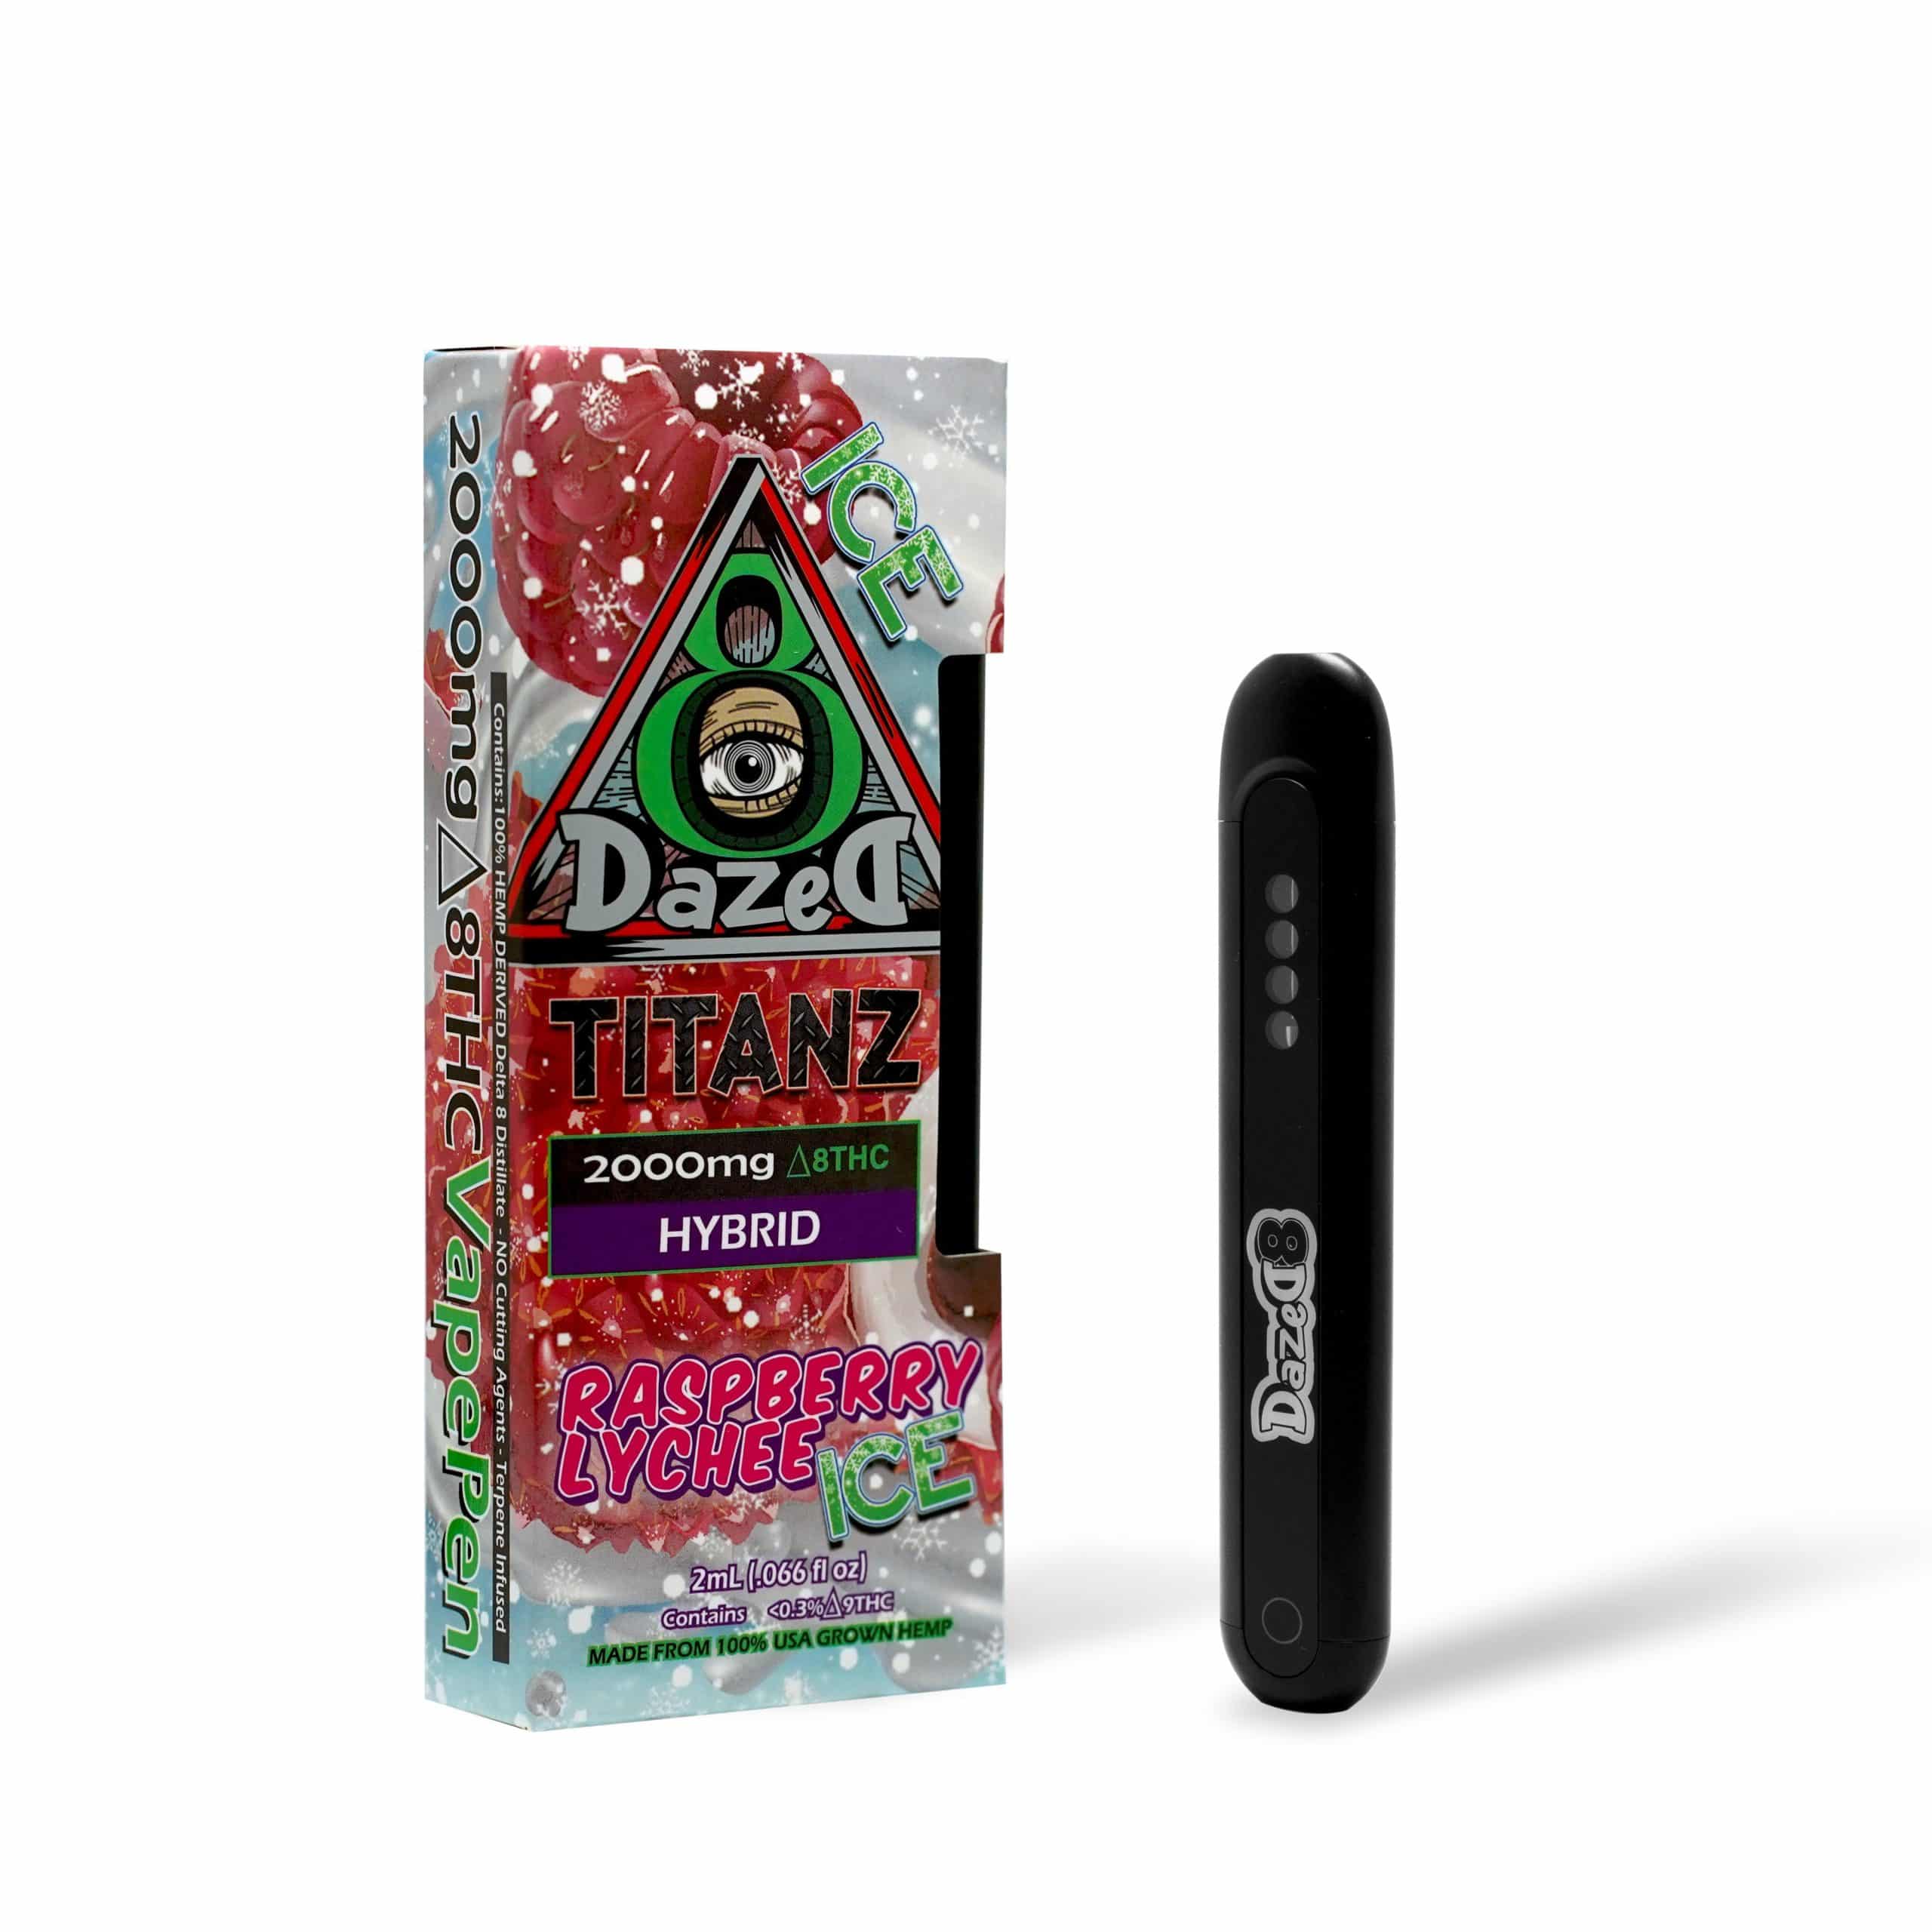 DazeD8 Raspberry Lychee Ice Delta 8 Disposable (2g) Best Price